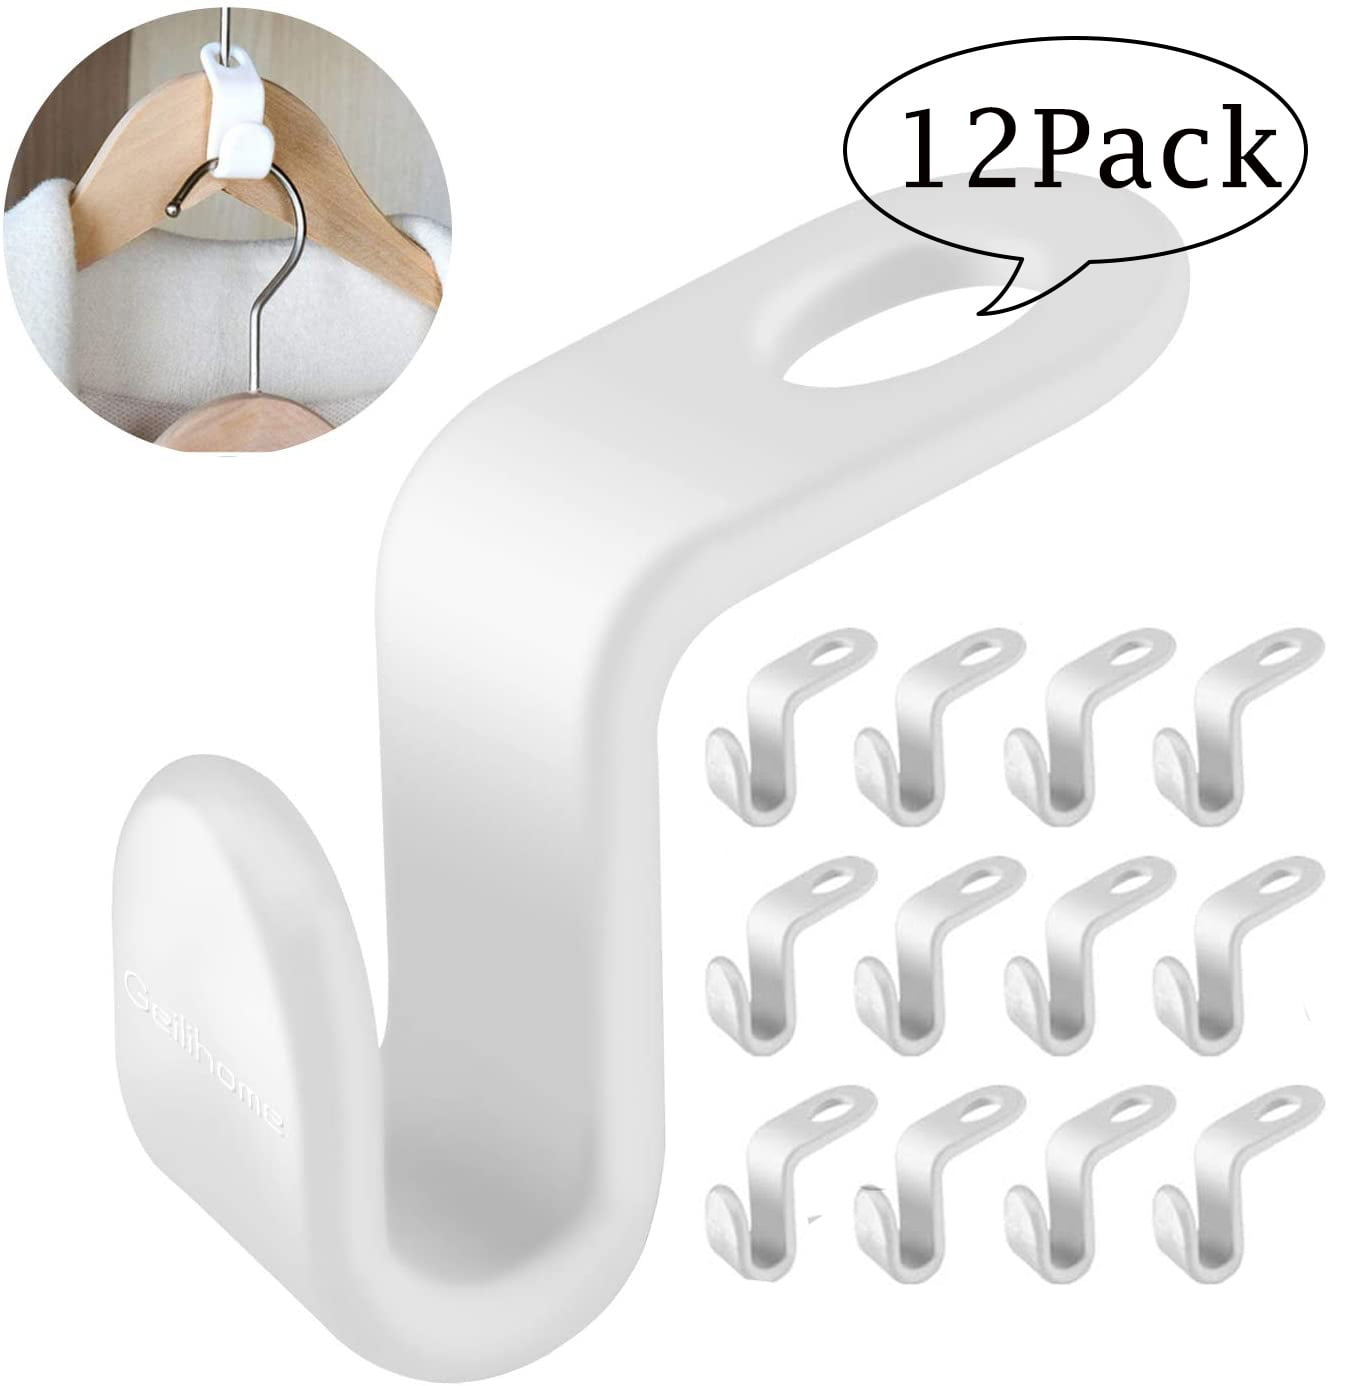 2 HANGERWORLD Pack of 120 White Plastic Space Saving Connector Hooks for Coat Hangers-4.8cm